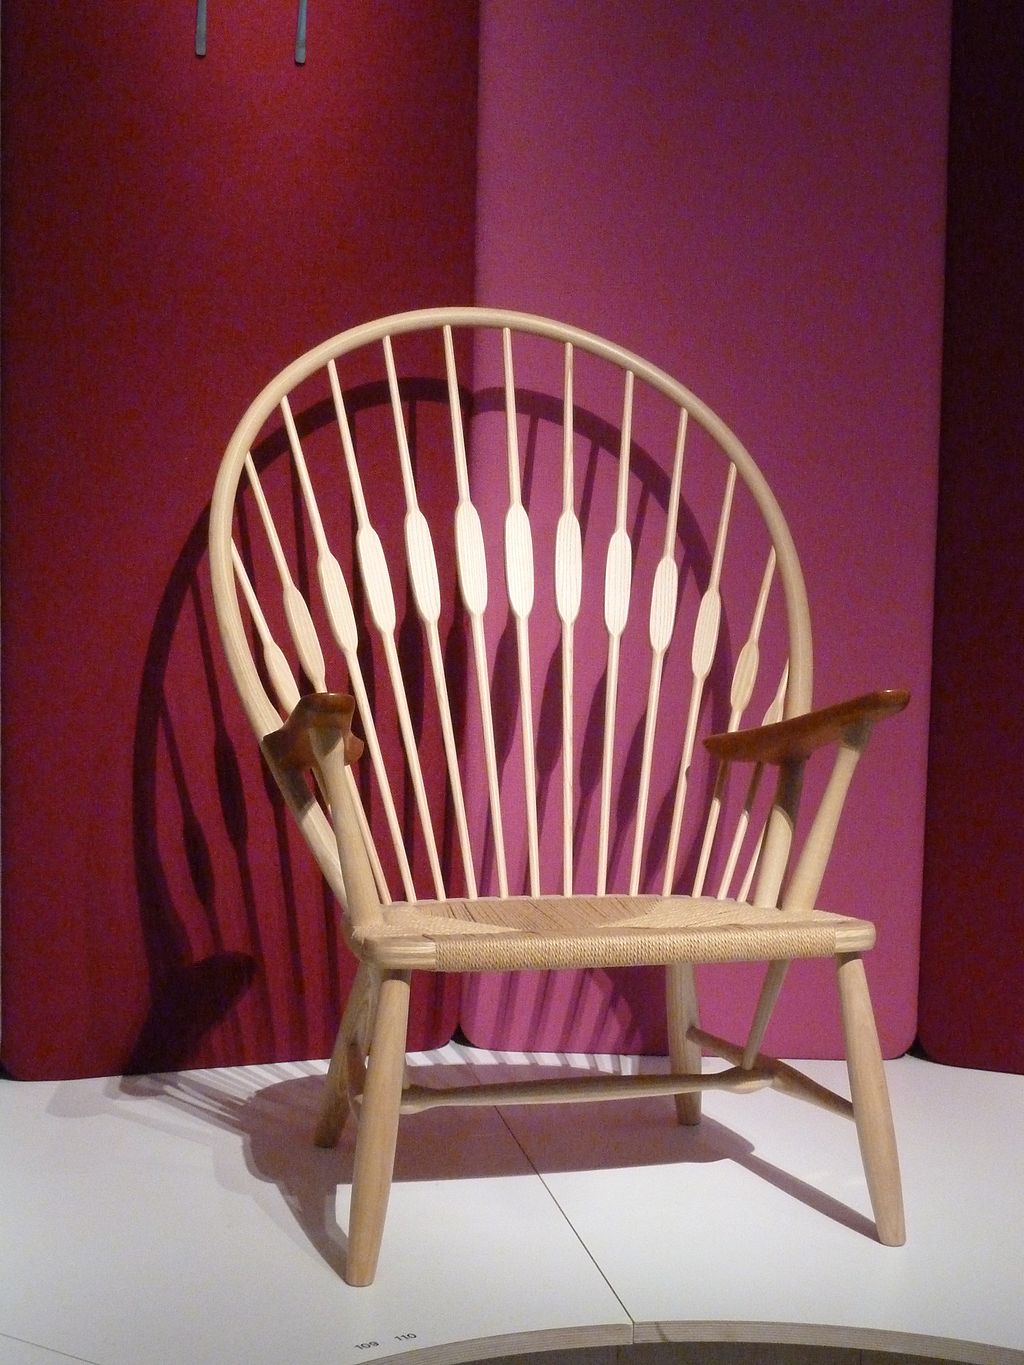 La sedia Peacock di Hans J. Wegner in mostra al Designmuseum Danmark